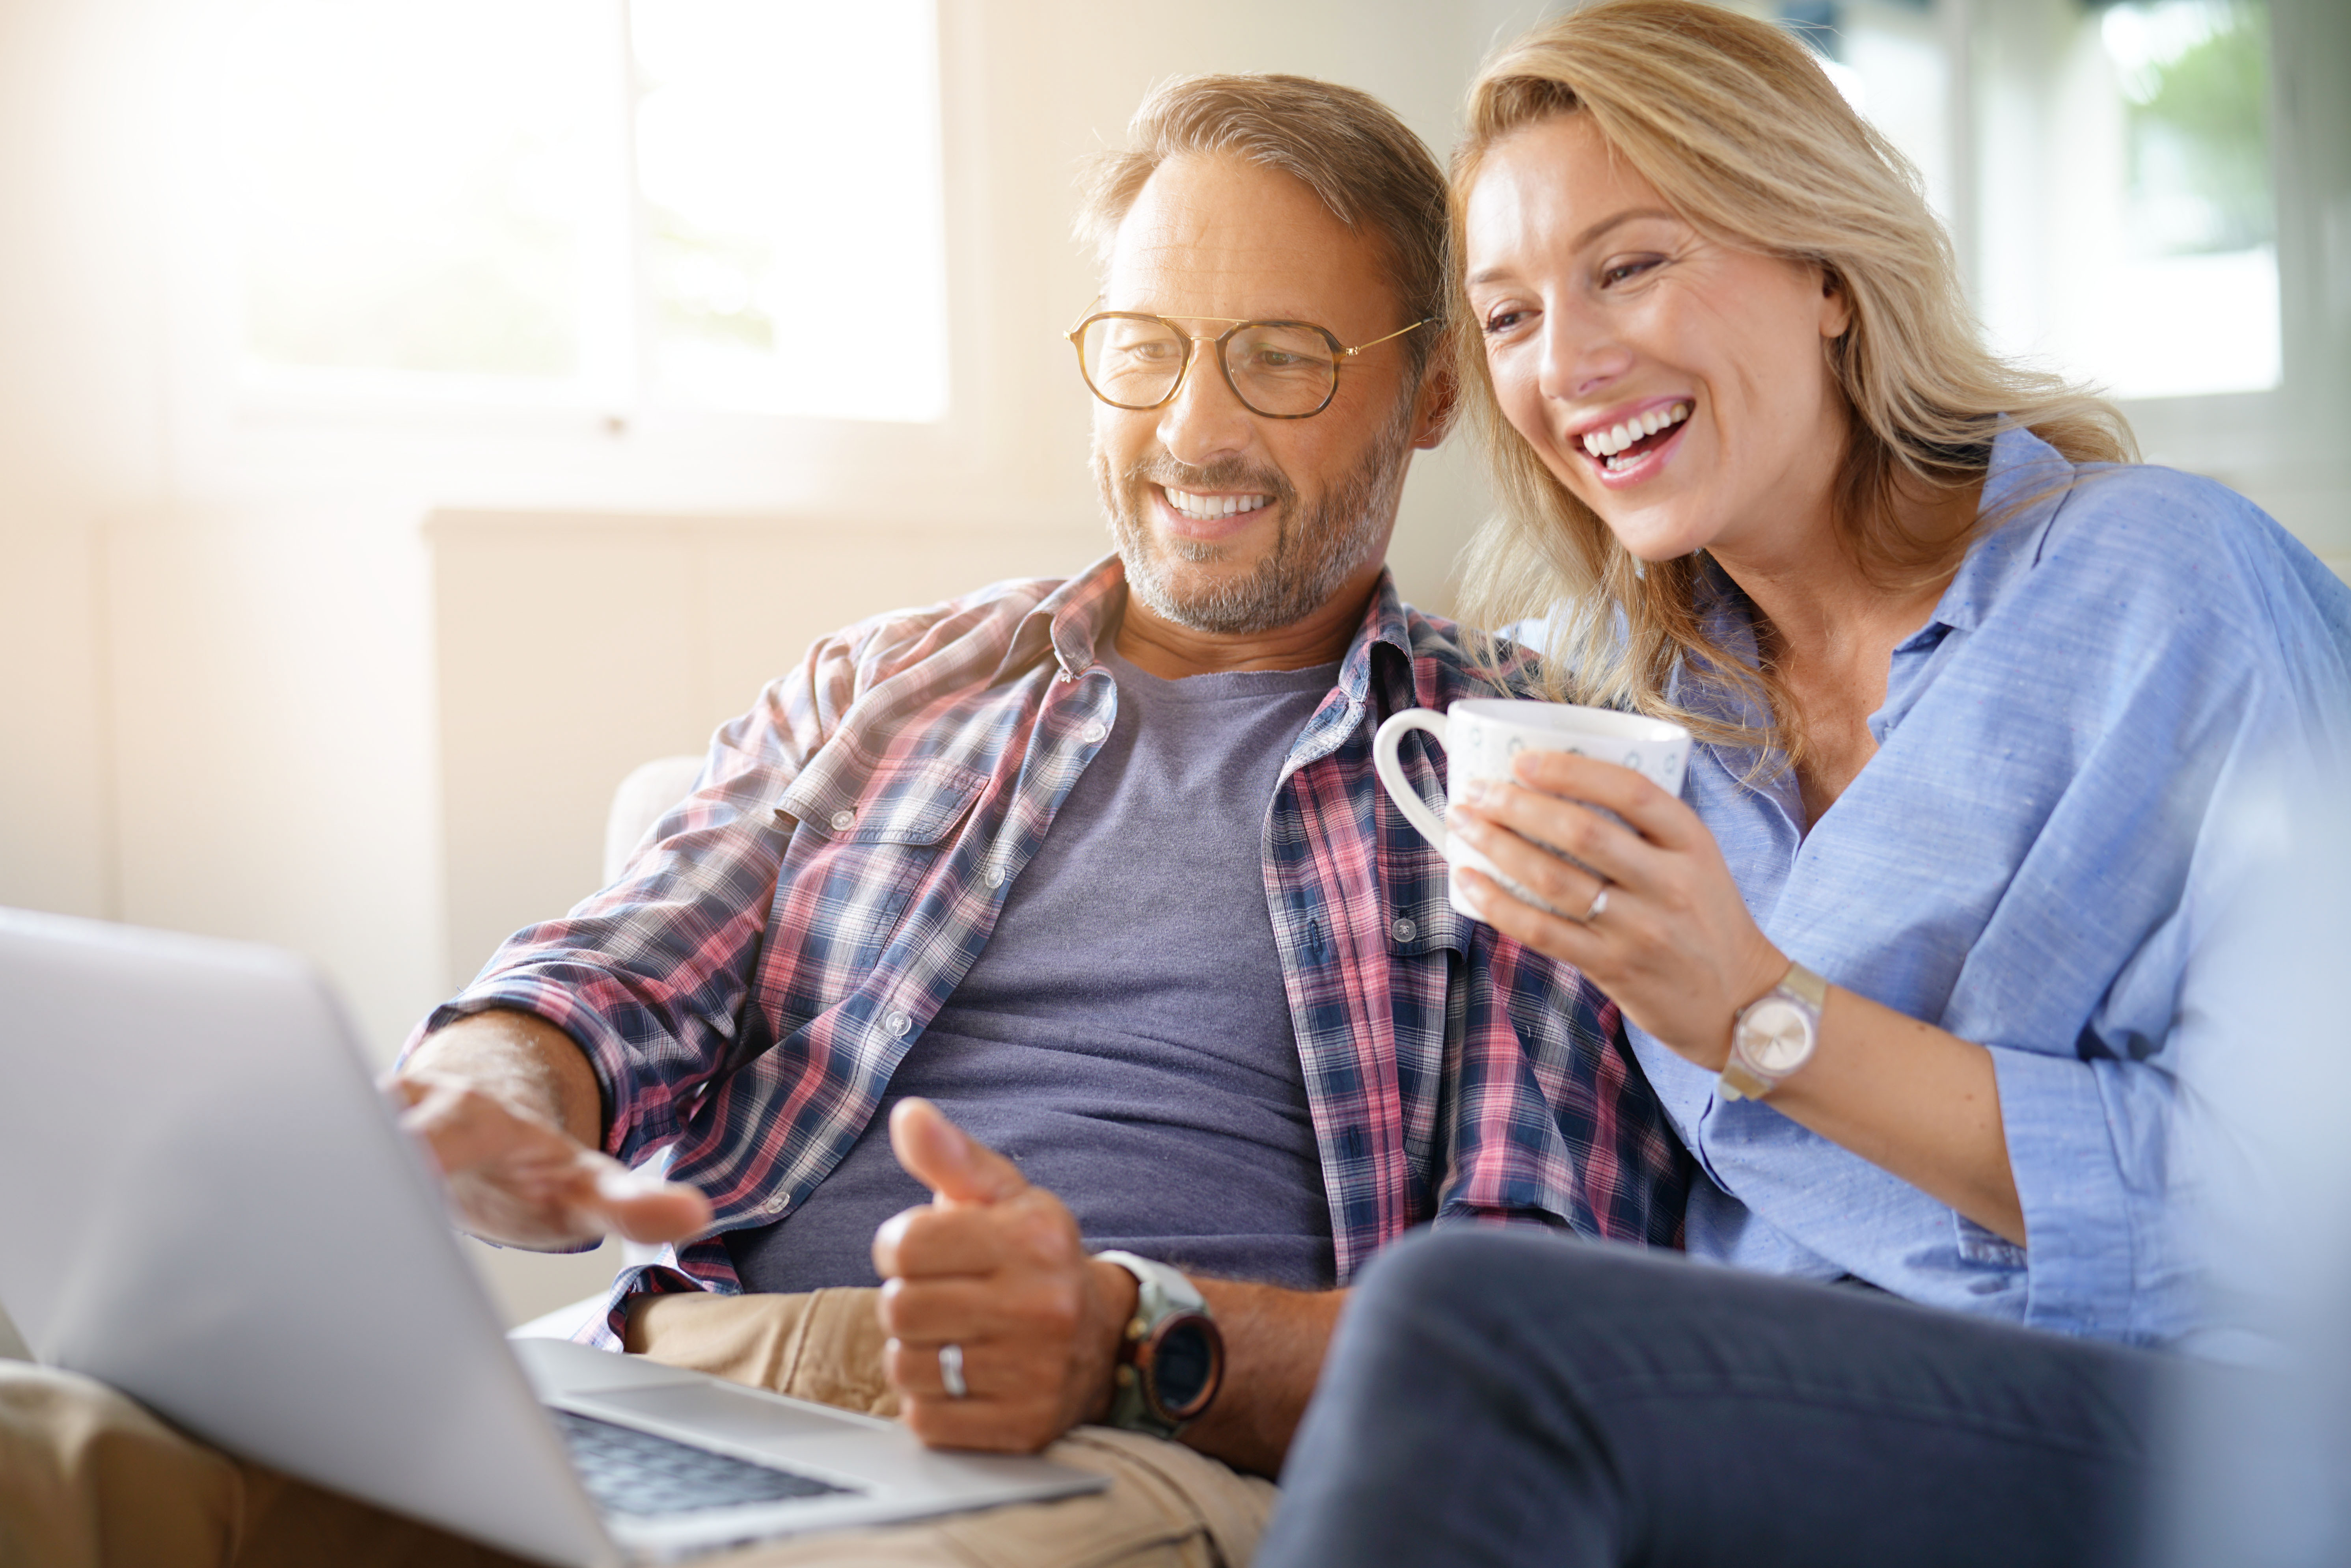 Un homme et une femme souriant en regardant un ordinateur portable | Source : Shutterstock